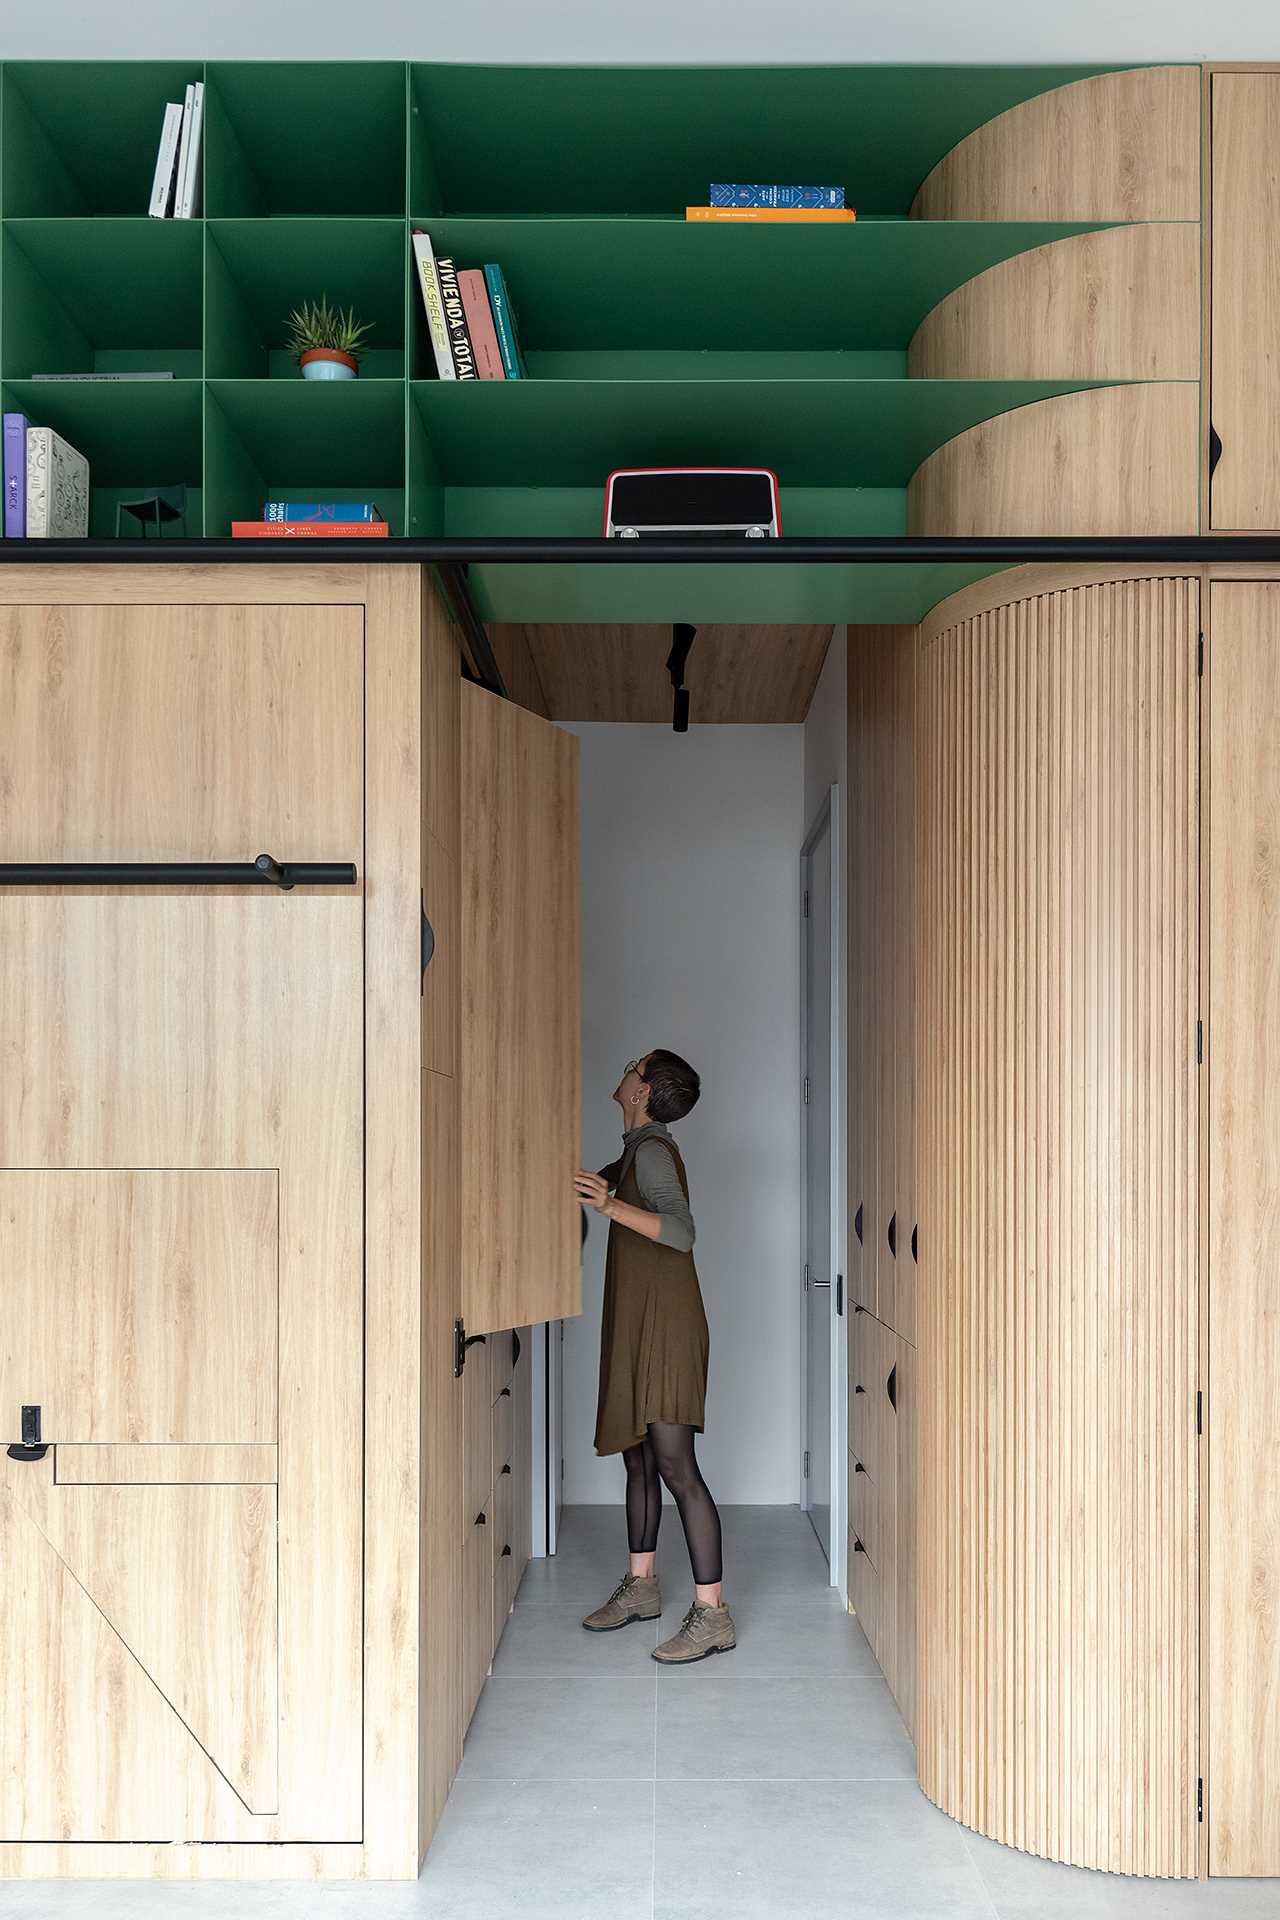 Thiết kế tủ đồ giúp tận dụng tối đa không gian trong căn hộ nhỏ - Ảnh 11.